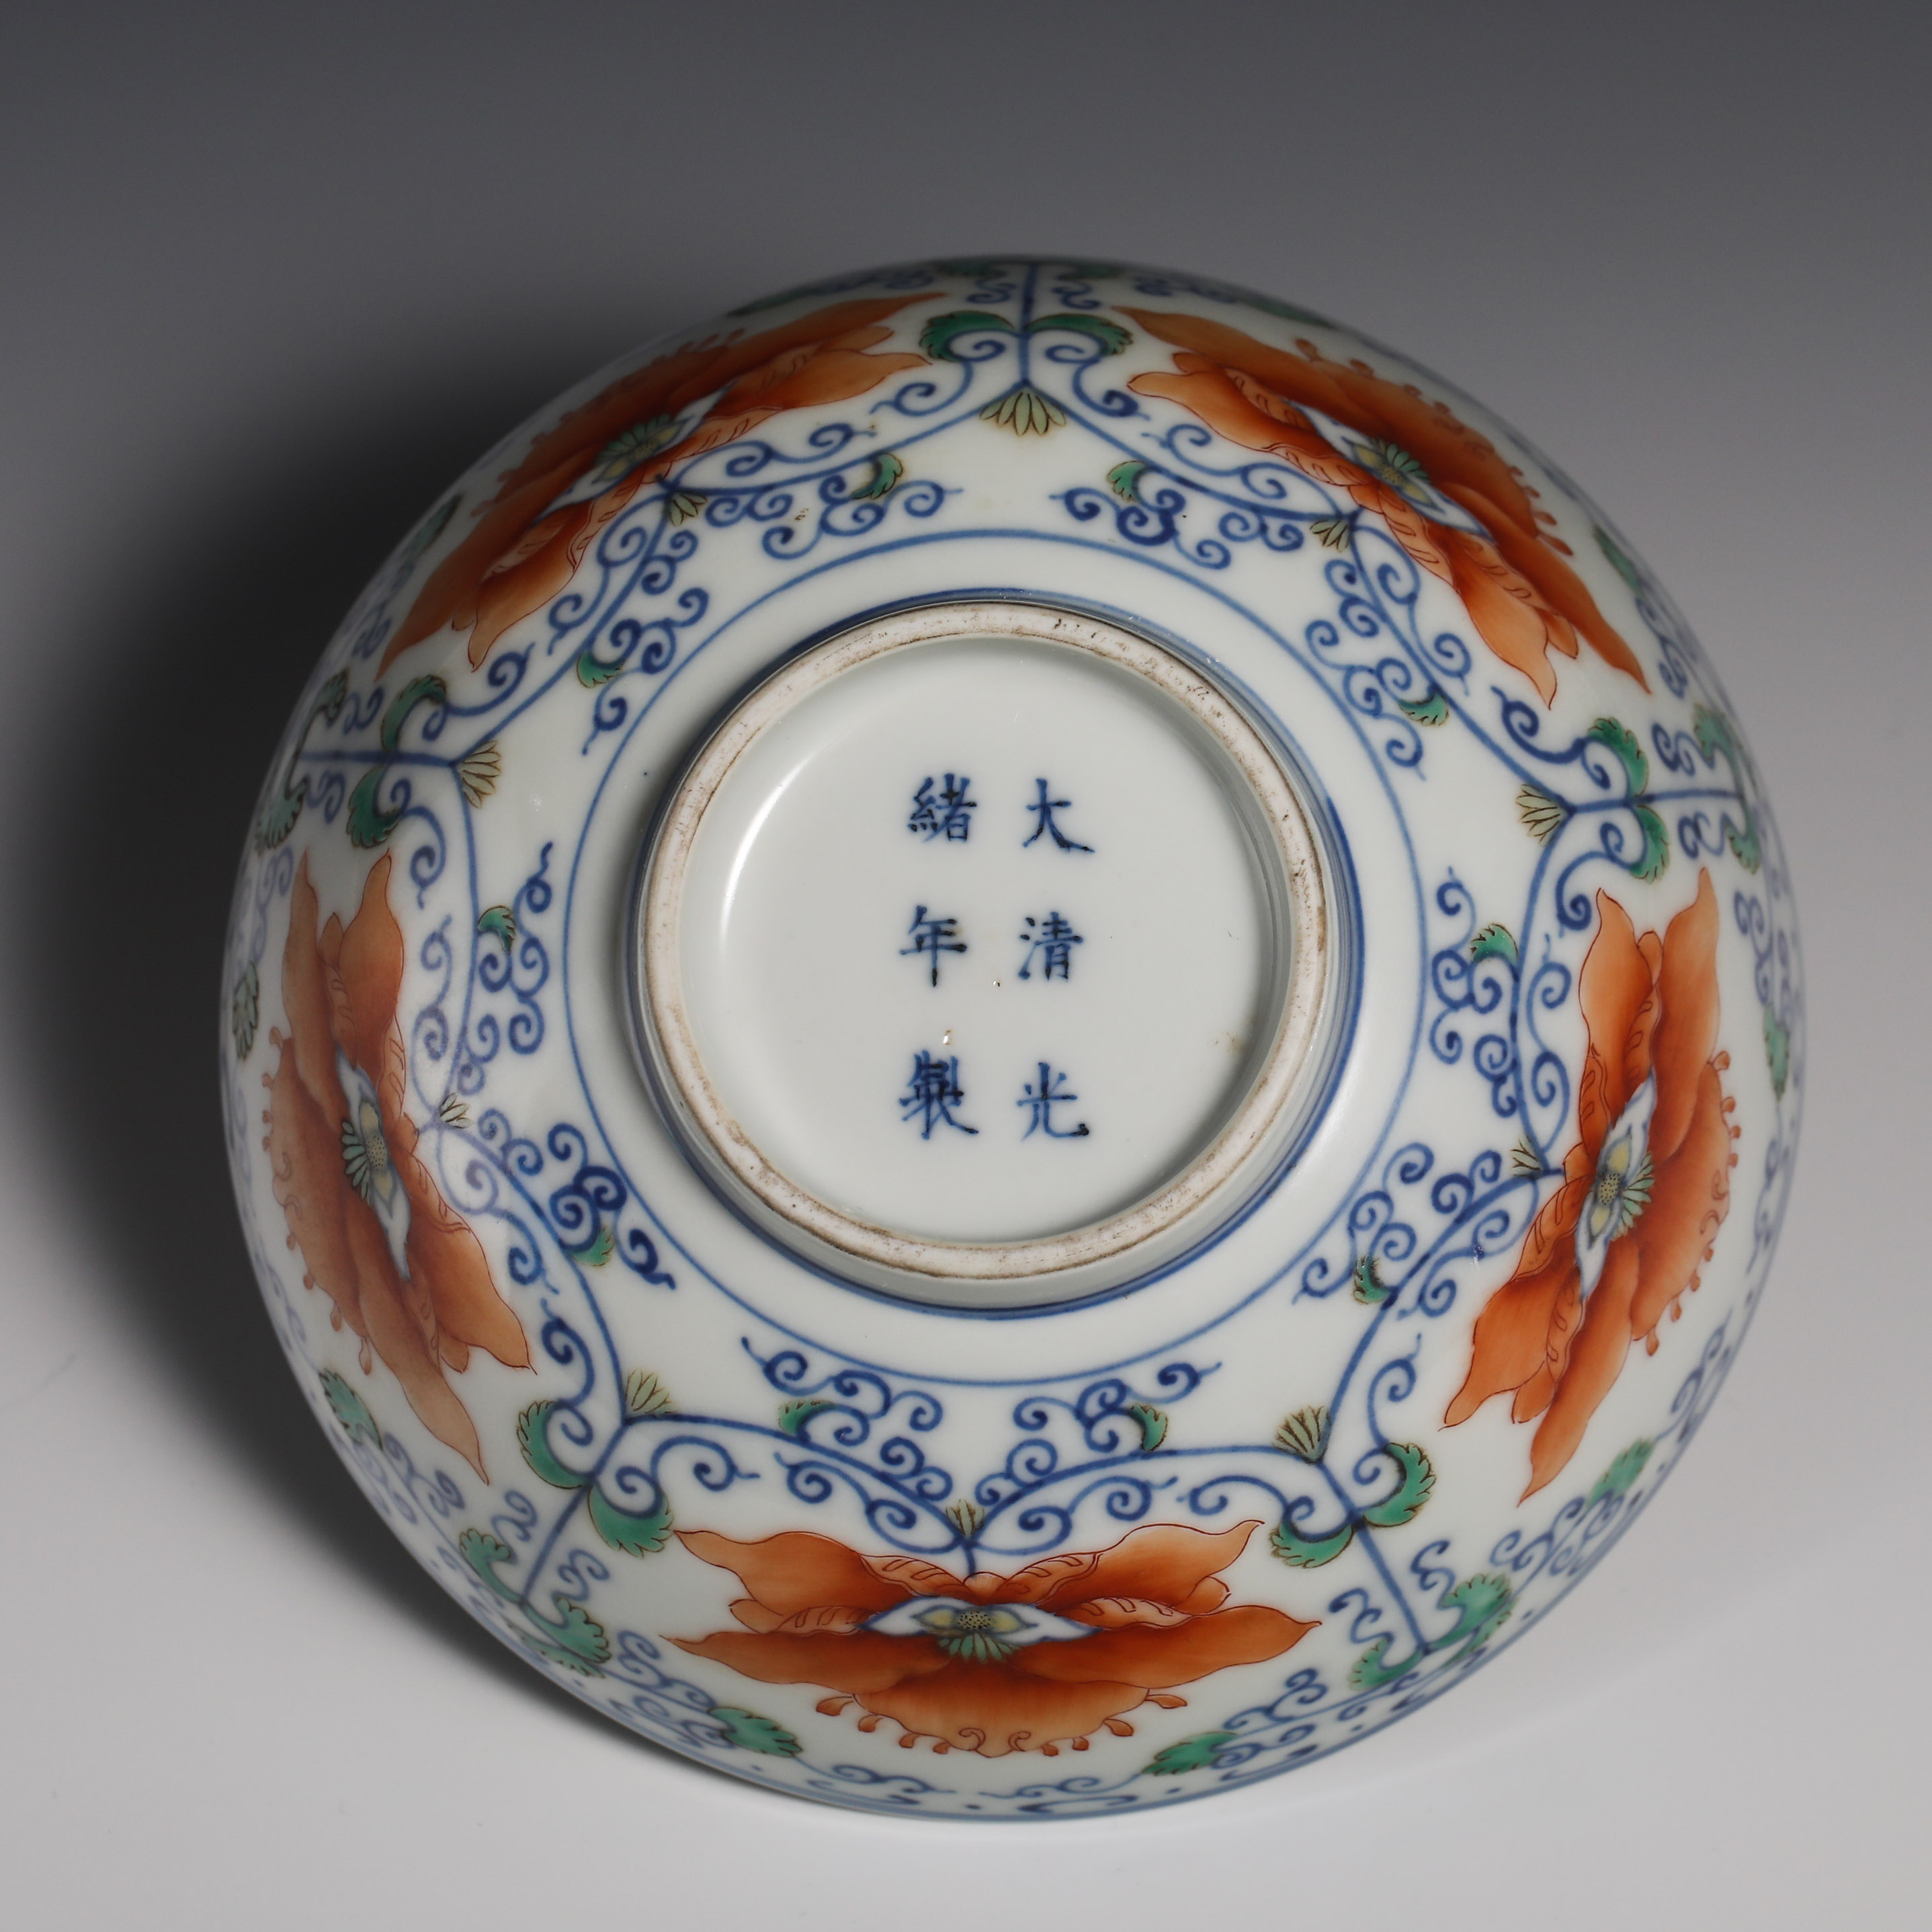 18th Century Doucai Bowl - Image 6 of 8